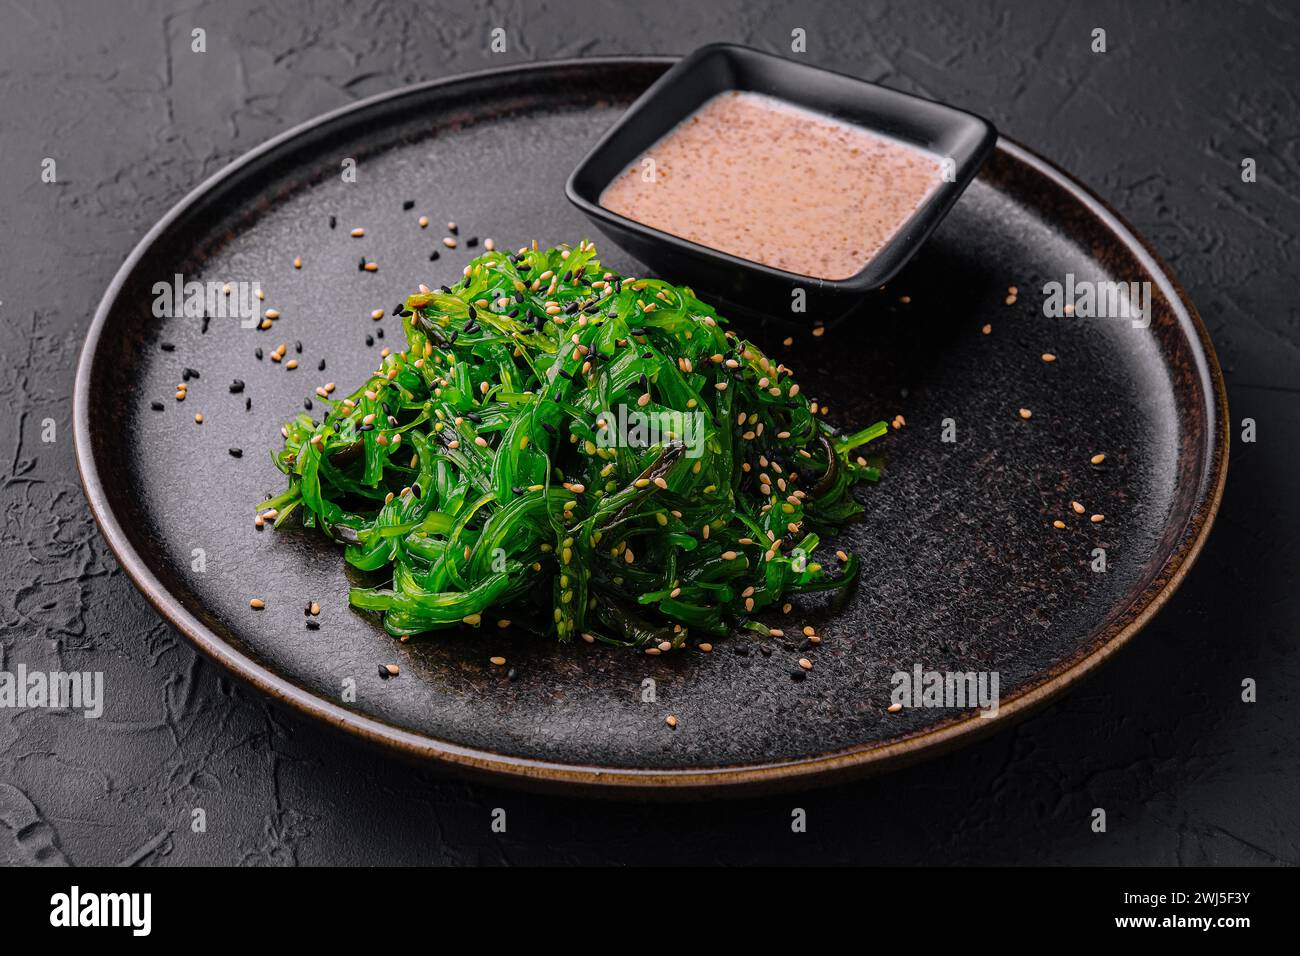 Salade d'algues wakame avec graines de sésame sur plaque noire Banque D'Images